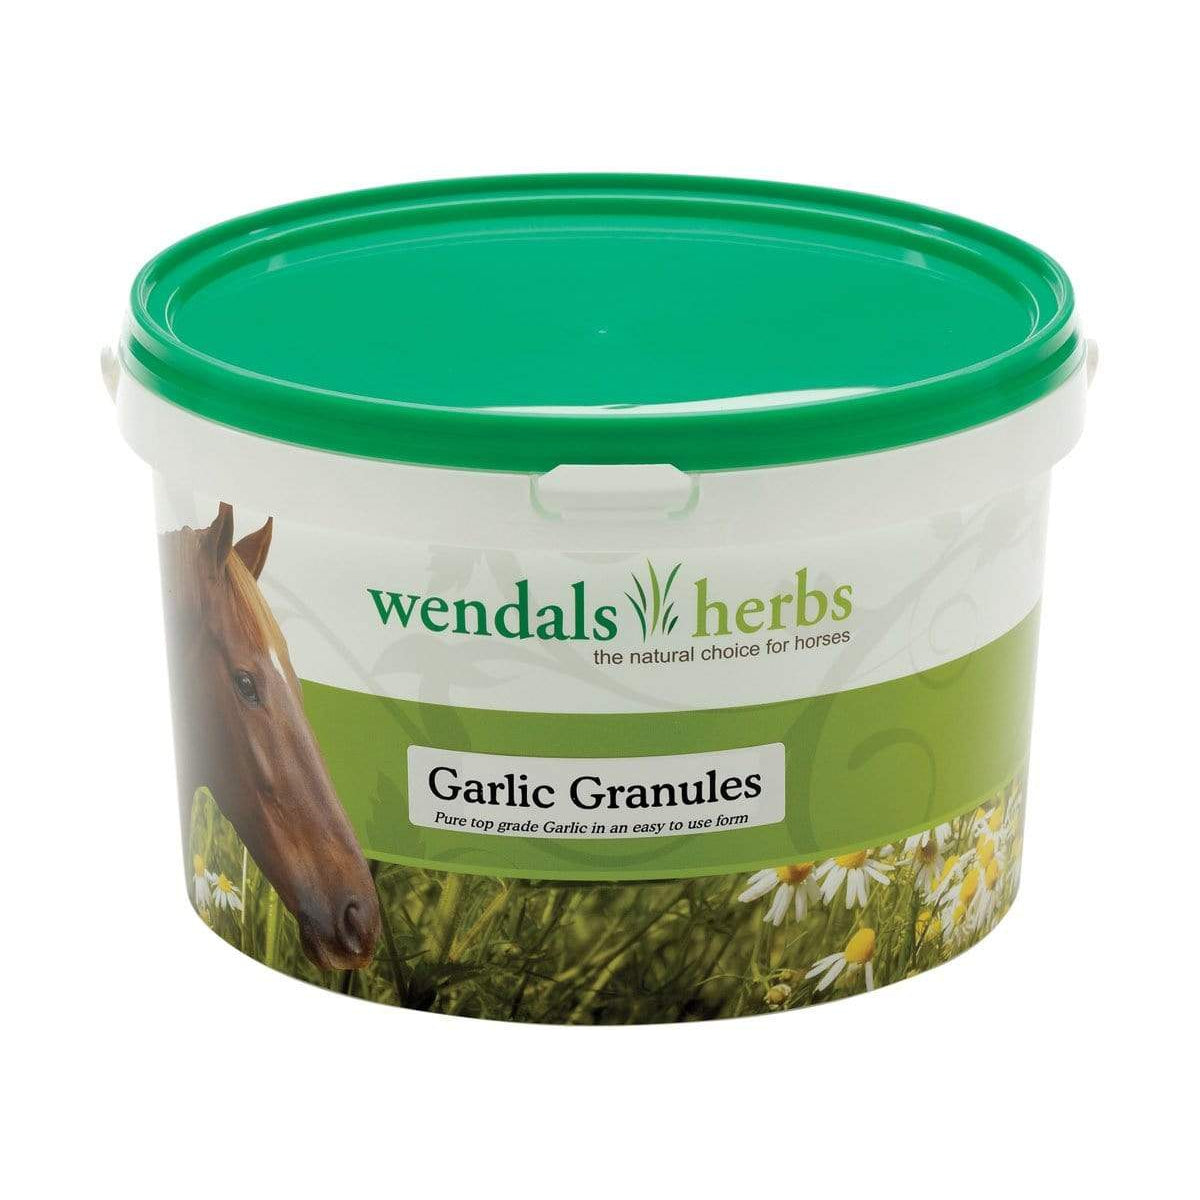 Wendals Herbs Garlic Granules